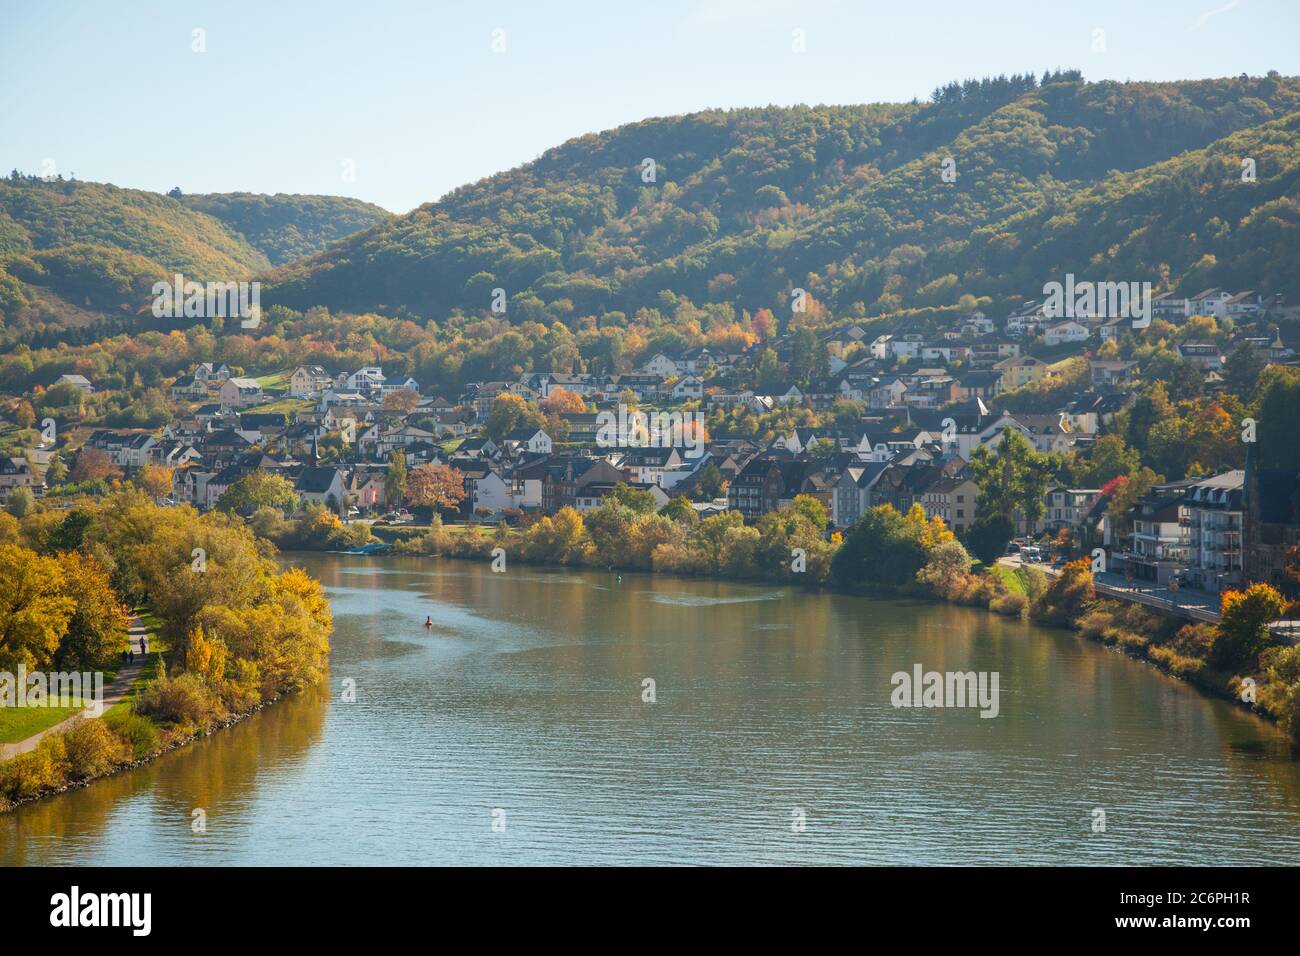 Herbststadt Cochem in Deutschland. Viele Häuser auf dem Berg zwischen den Weinbergen und der Mosel. Stockfoto